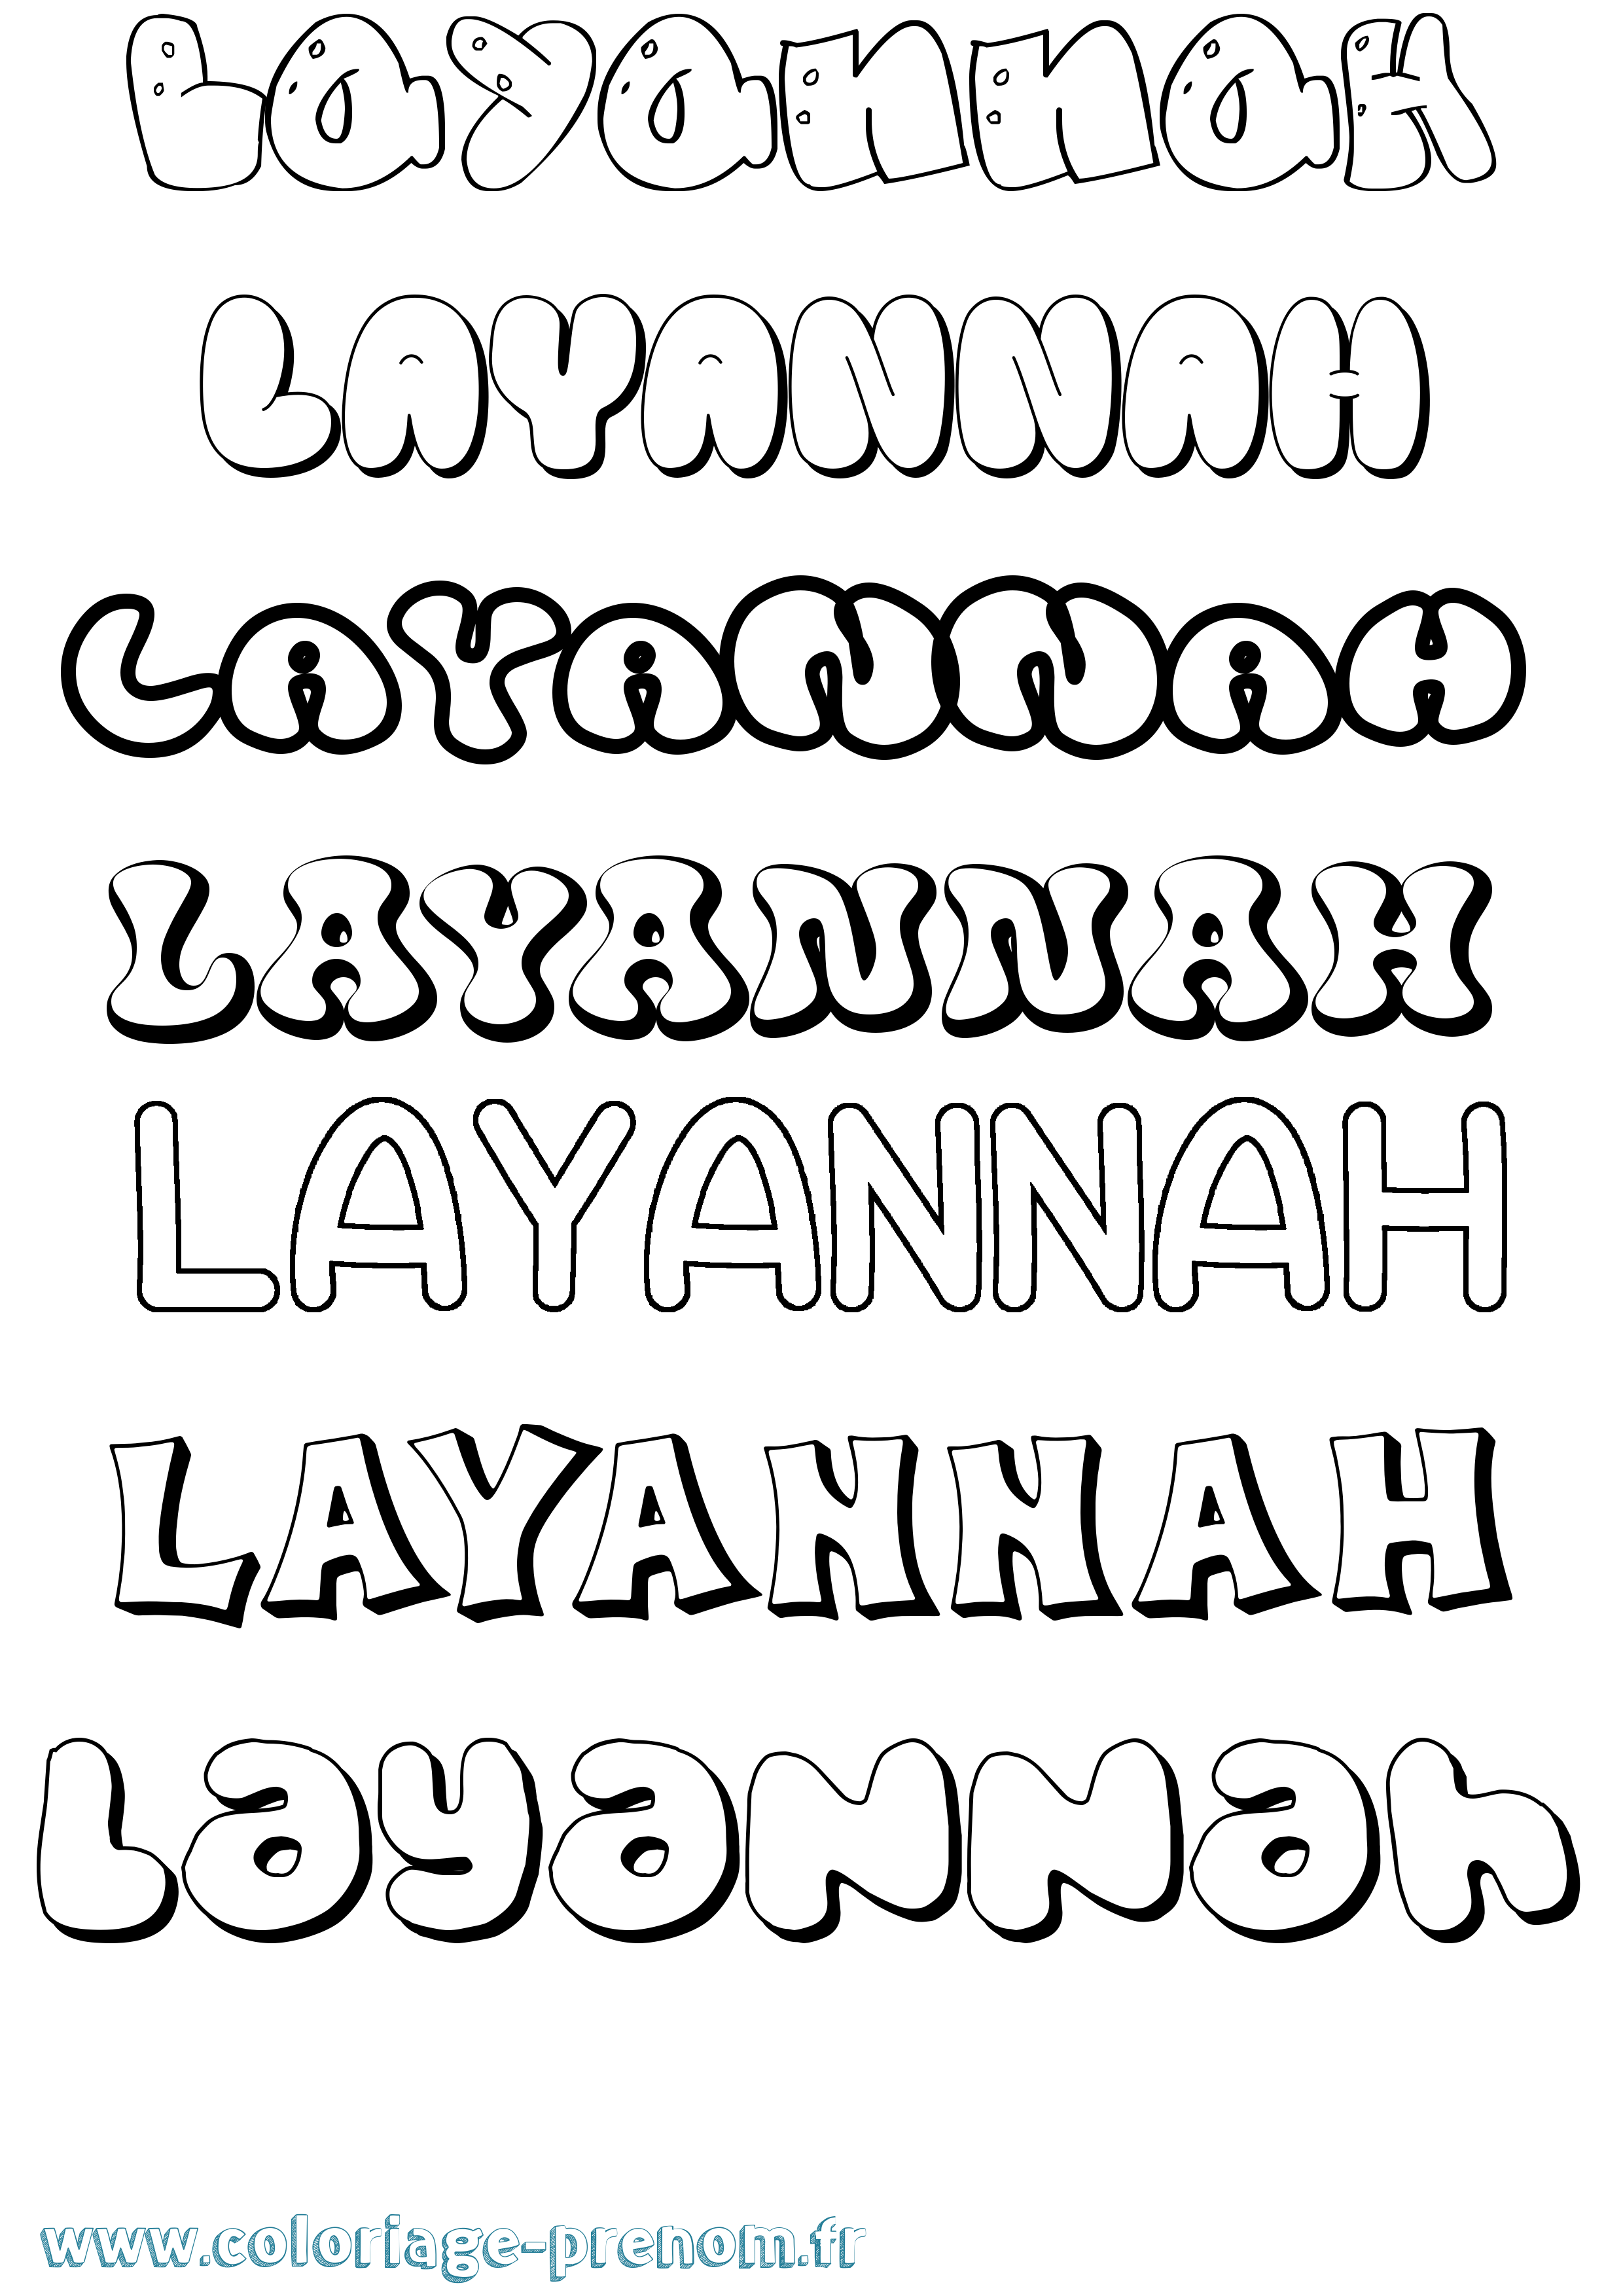 Coloriage prénom Layannah Bubble